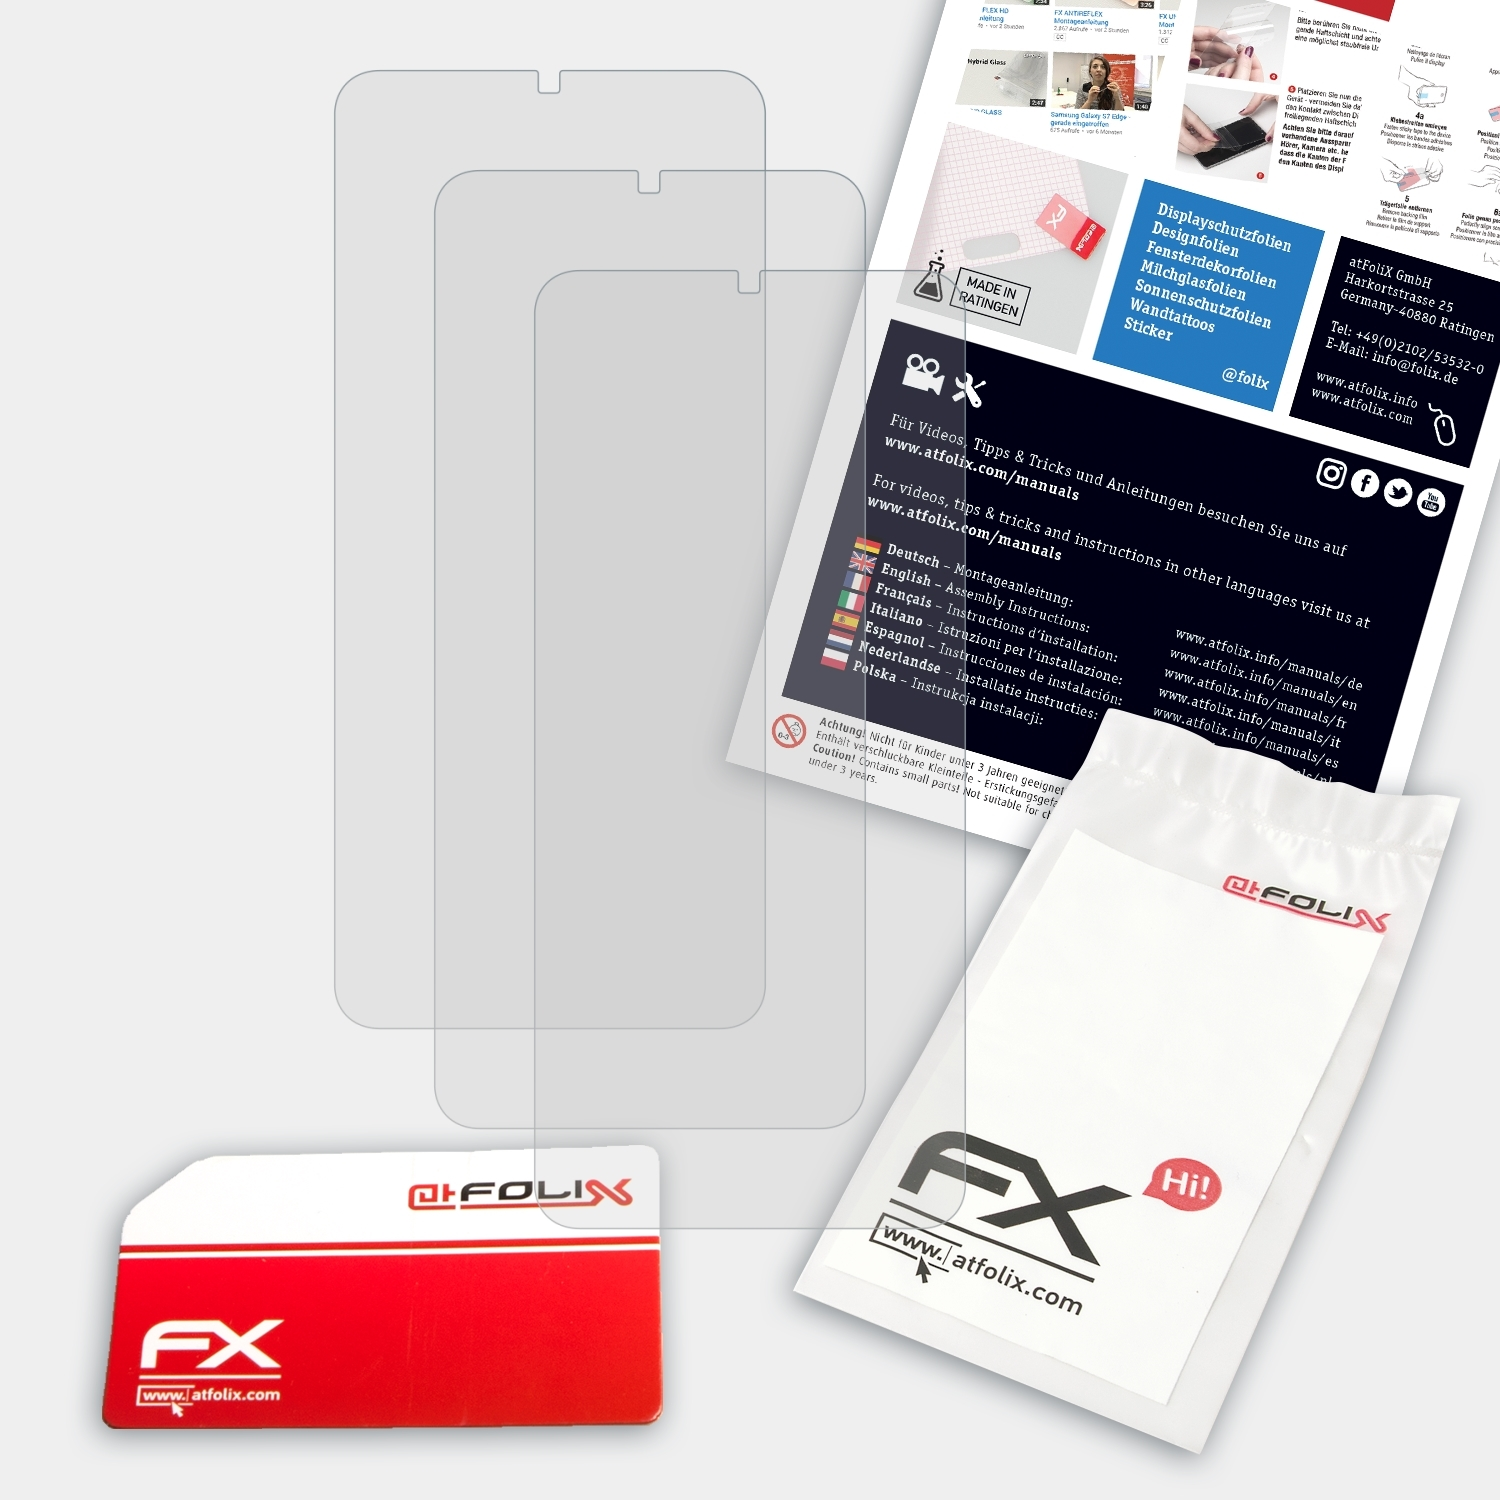 FX-Antireflex A50s) ATFOLIX 3x Galaxy Displayschutz(für Samsung